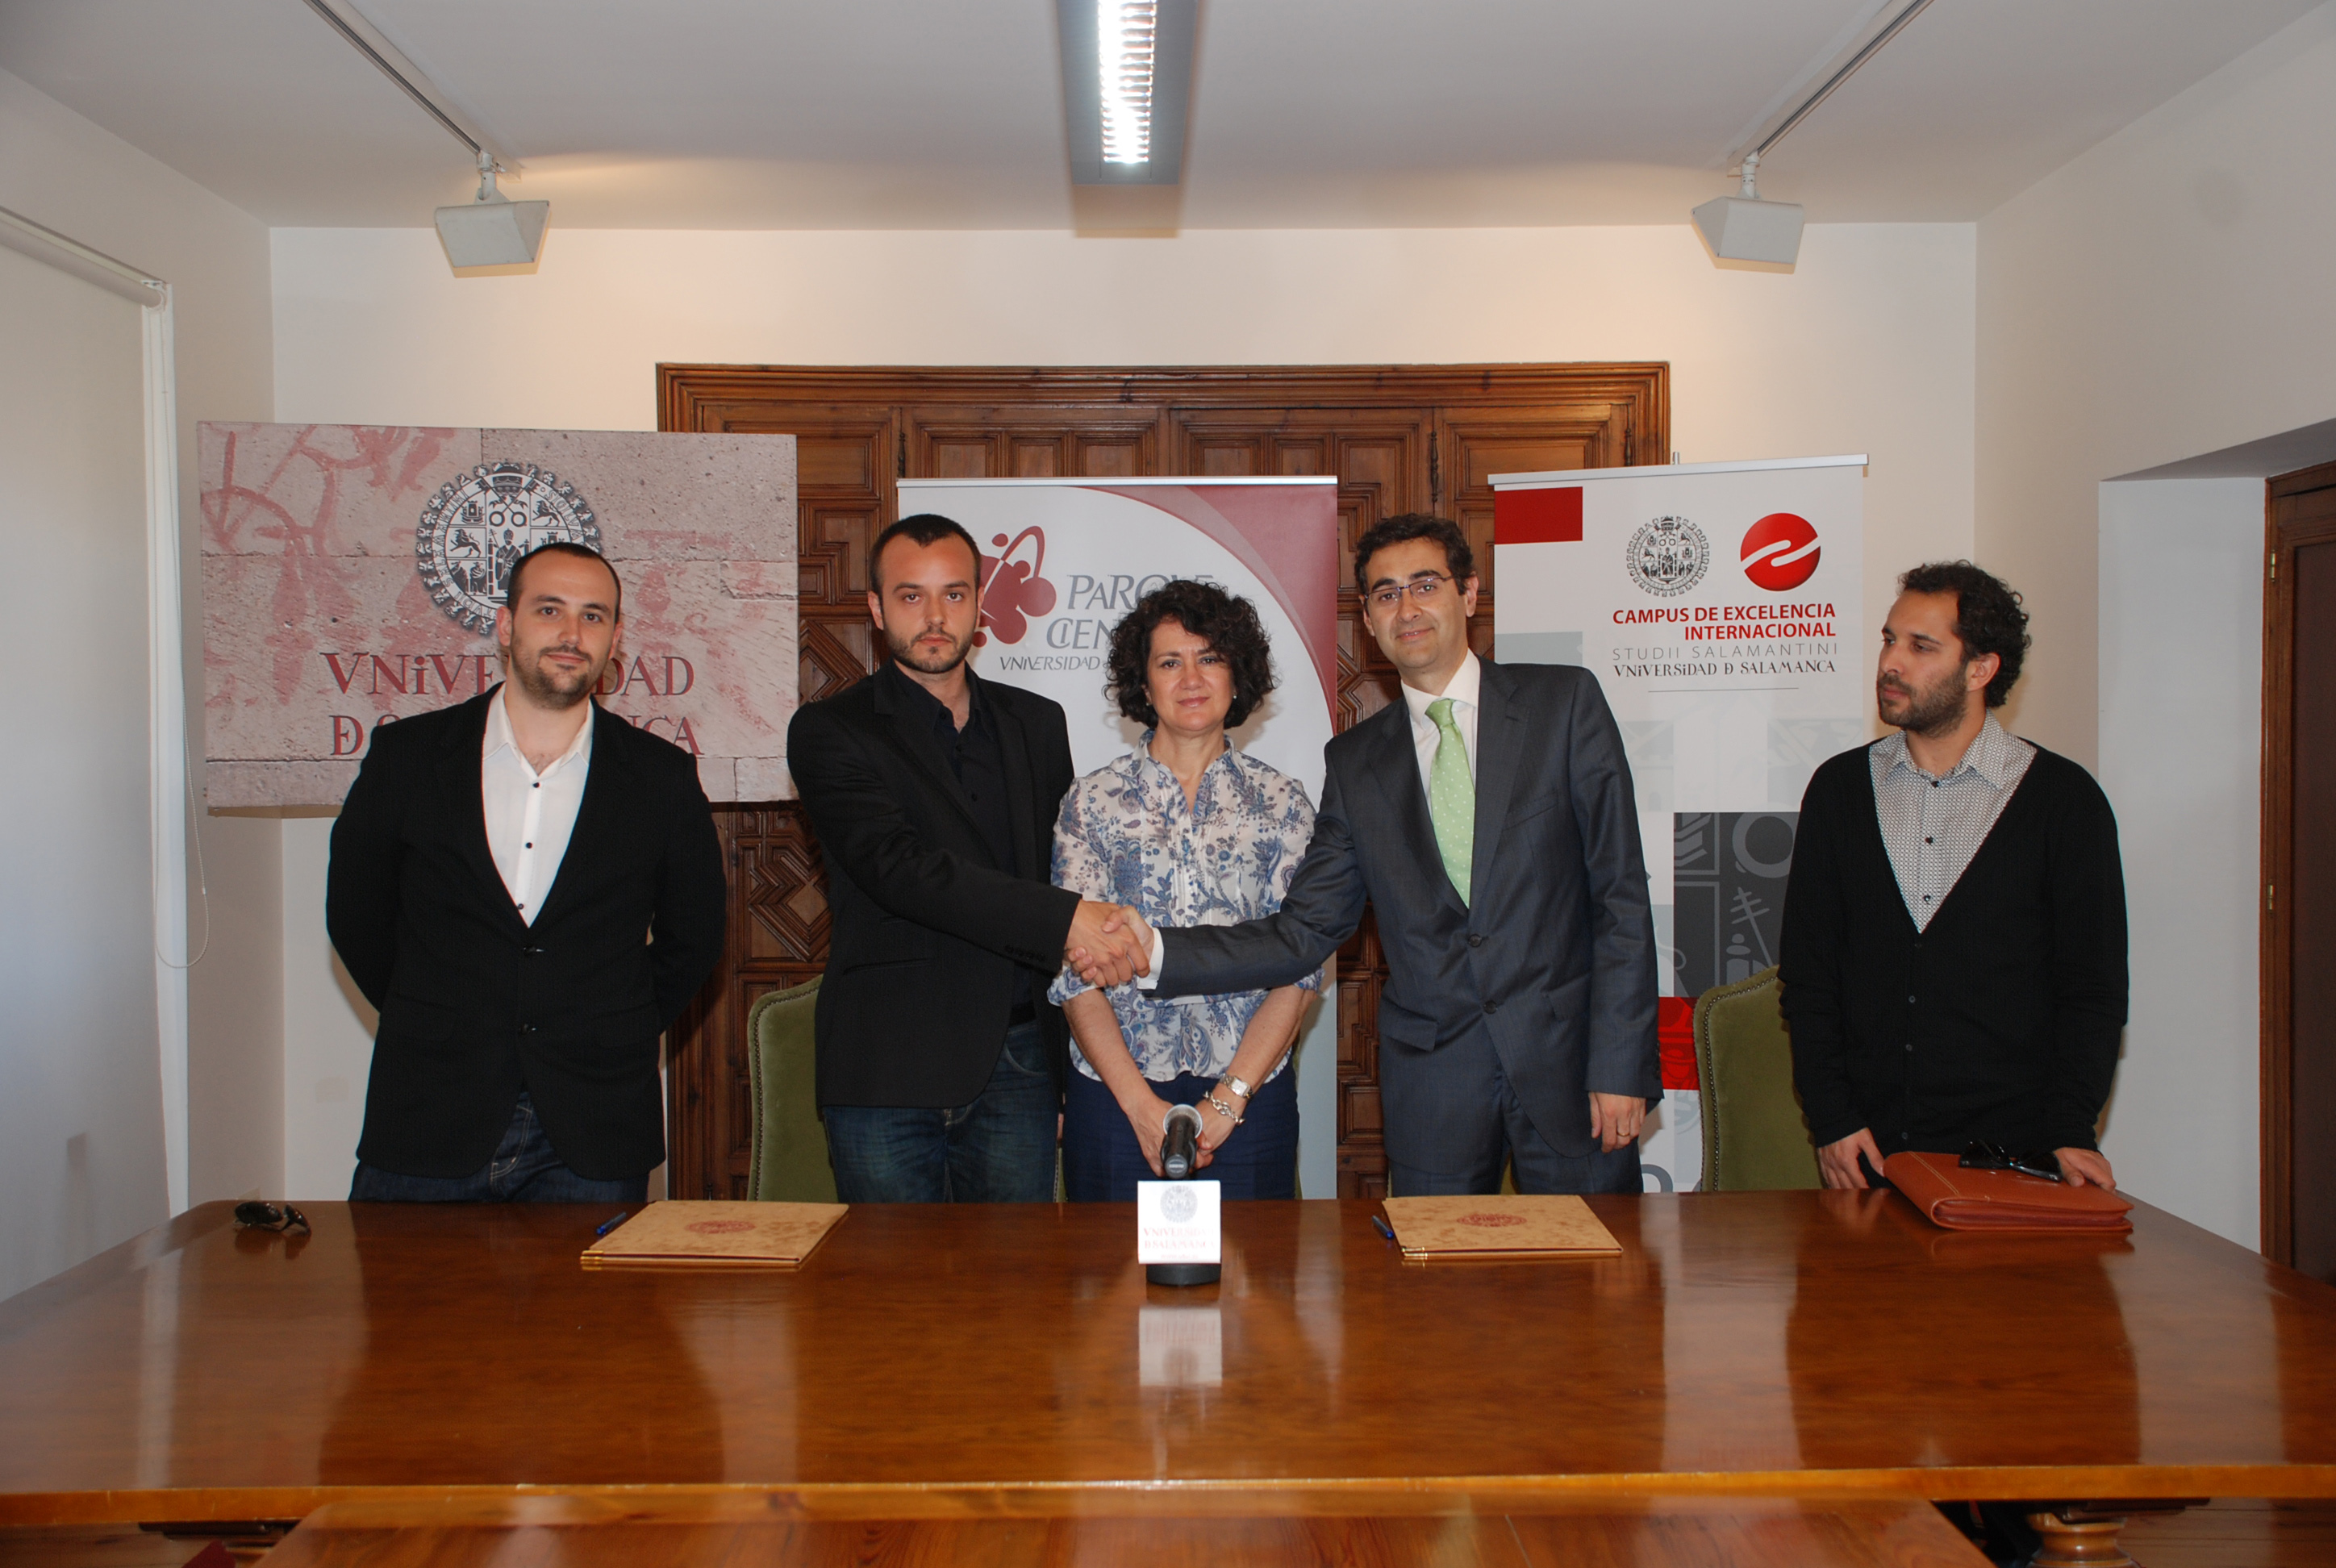 La Fundación Parque Científico de la Universidad de Salamanca suscribe un convenio con el Grupo EGDM